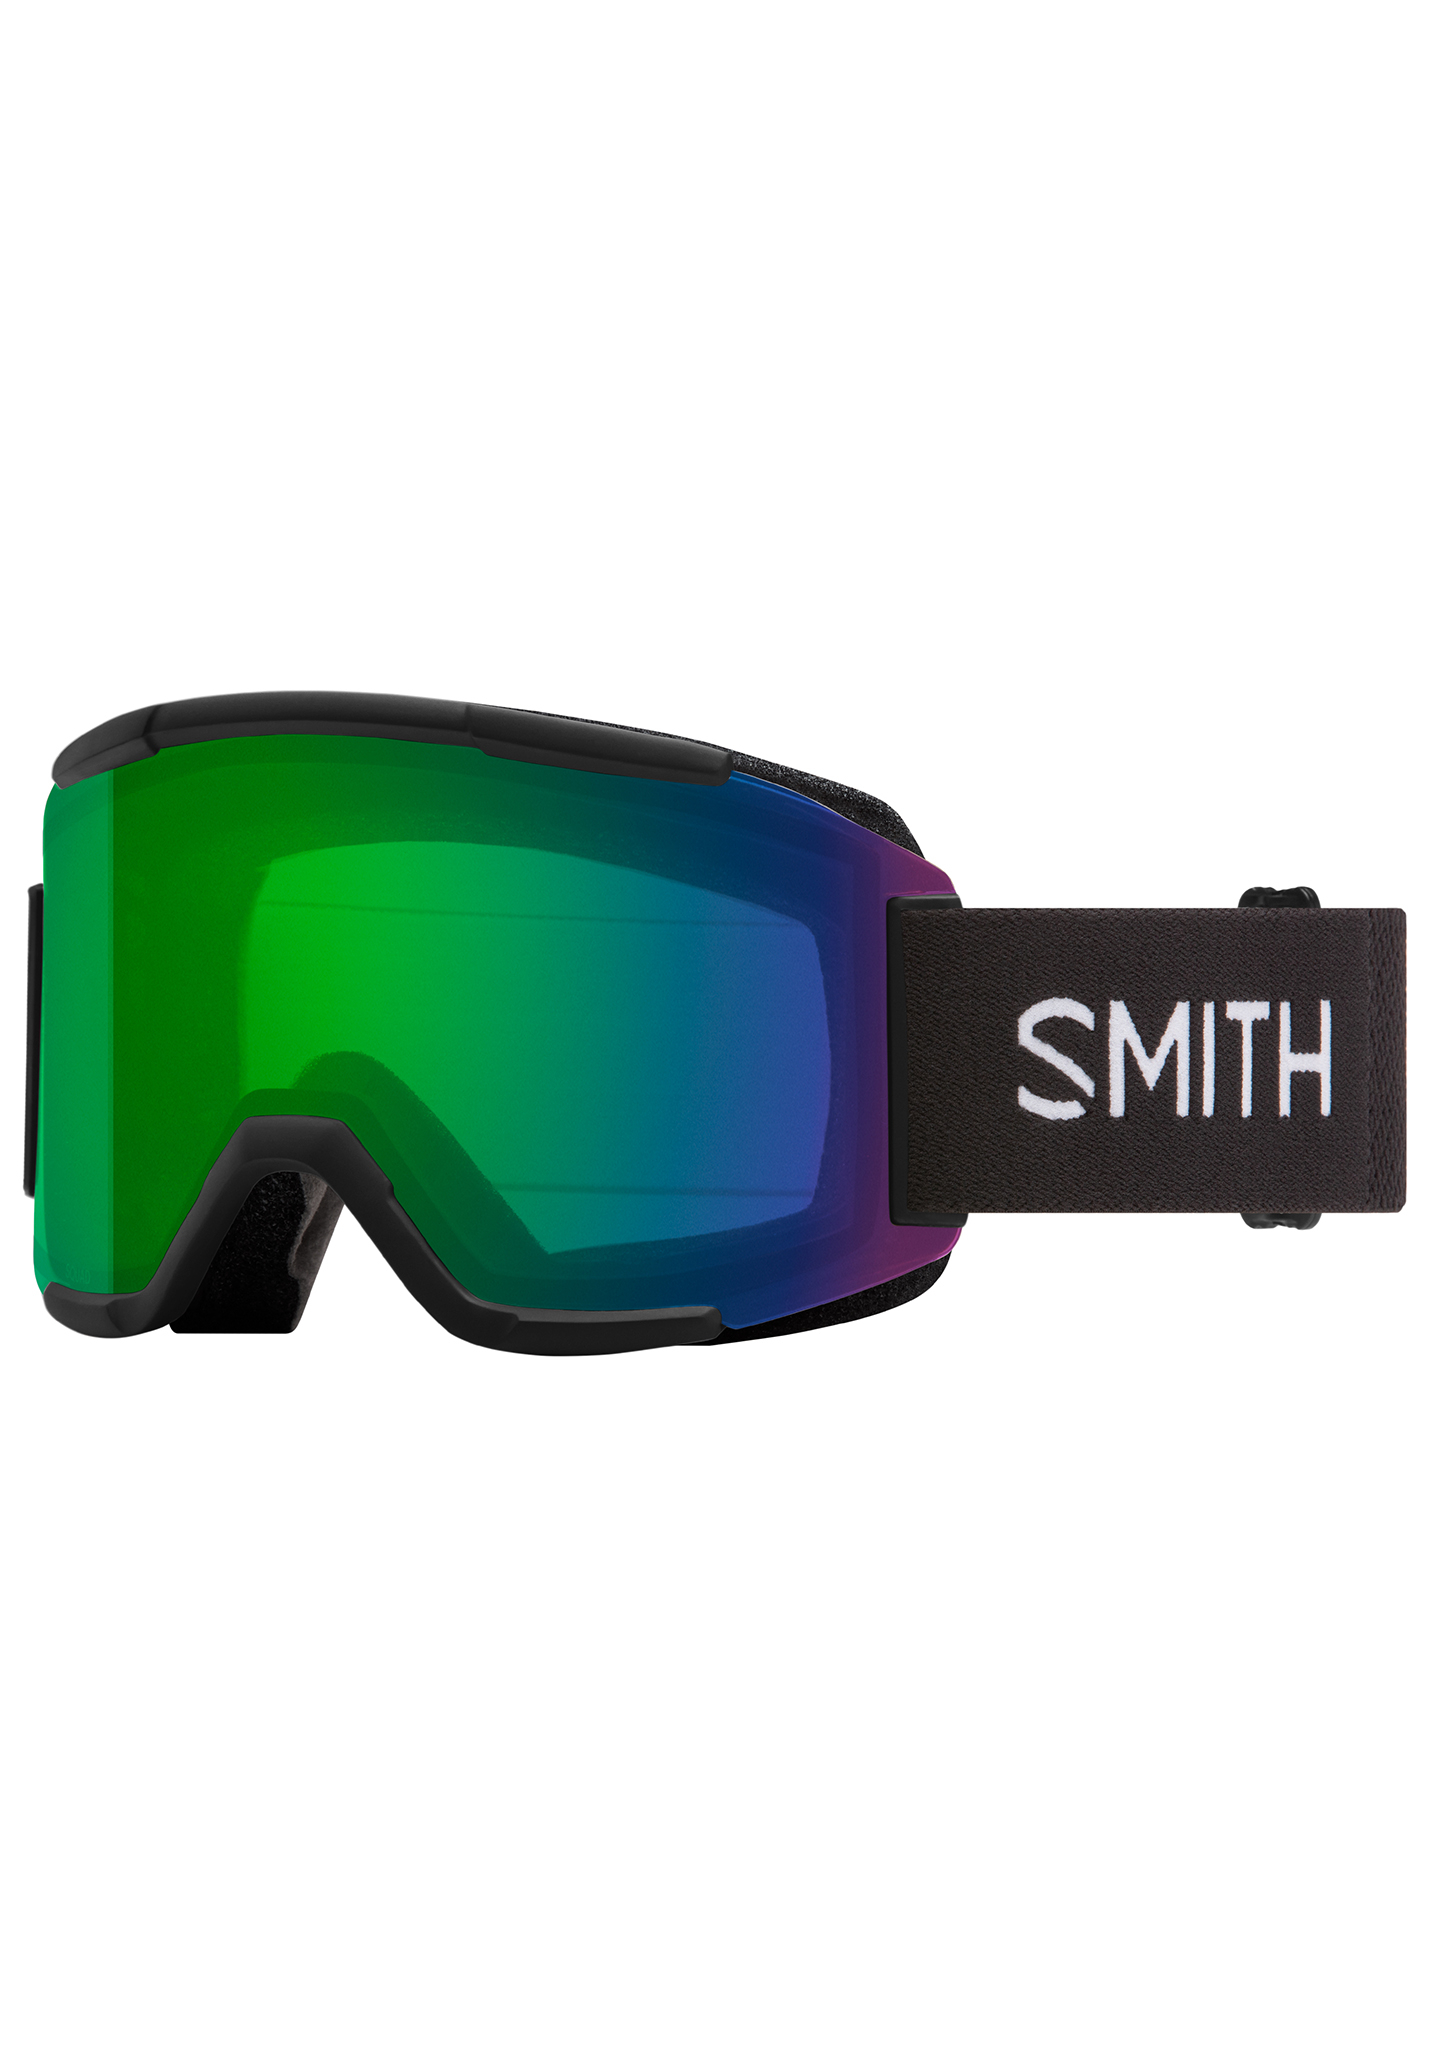 Smith Squad Snowboardbrillen schwarz/alltagsgrüner spiegel One Size